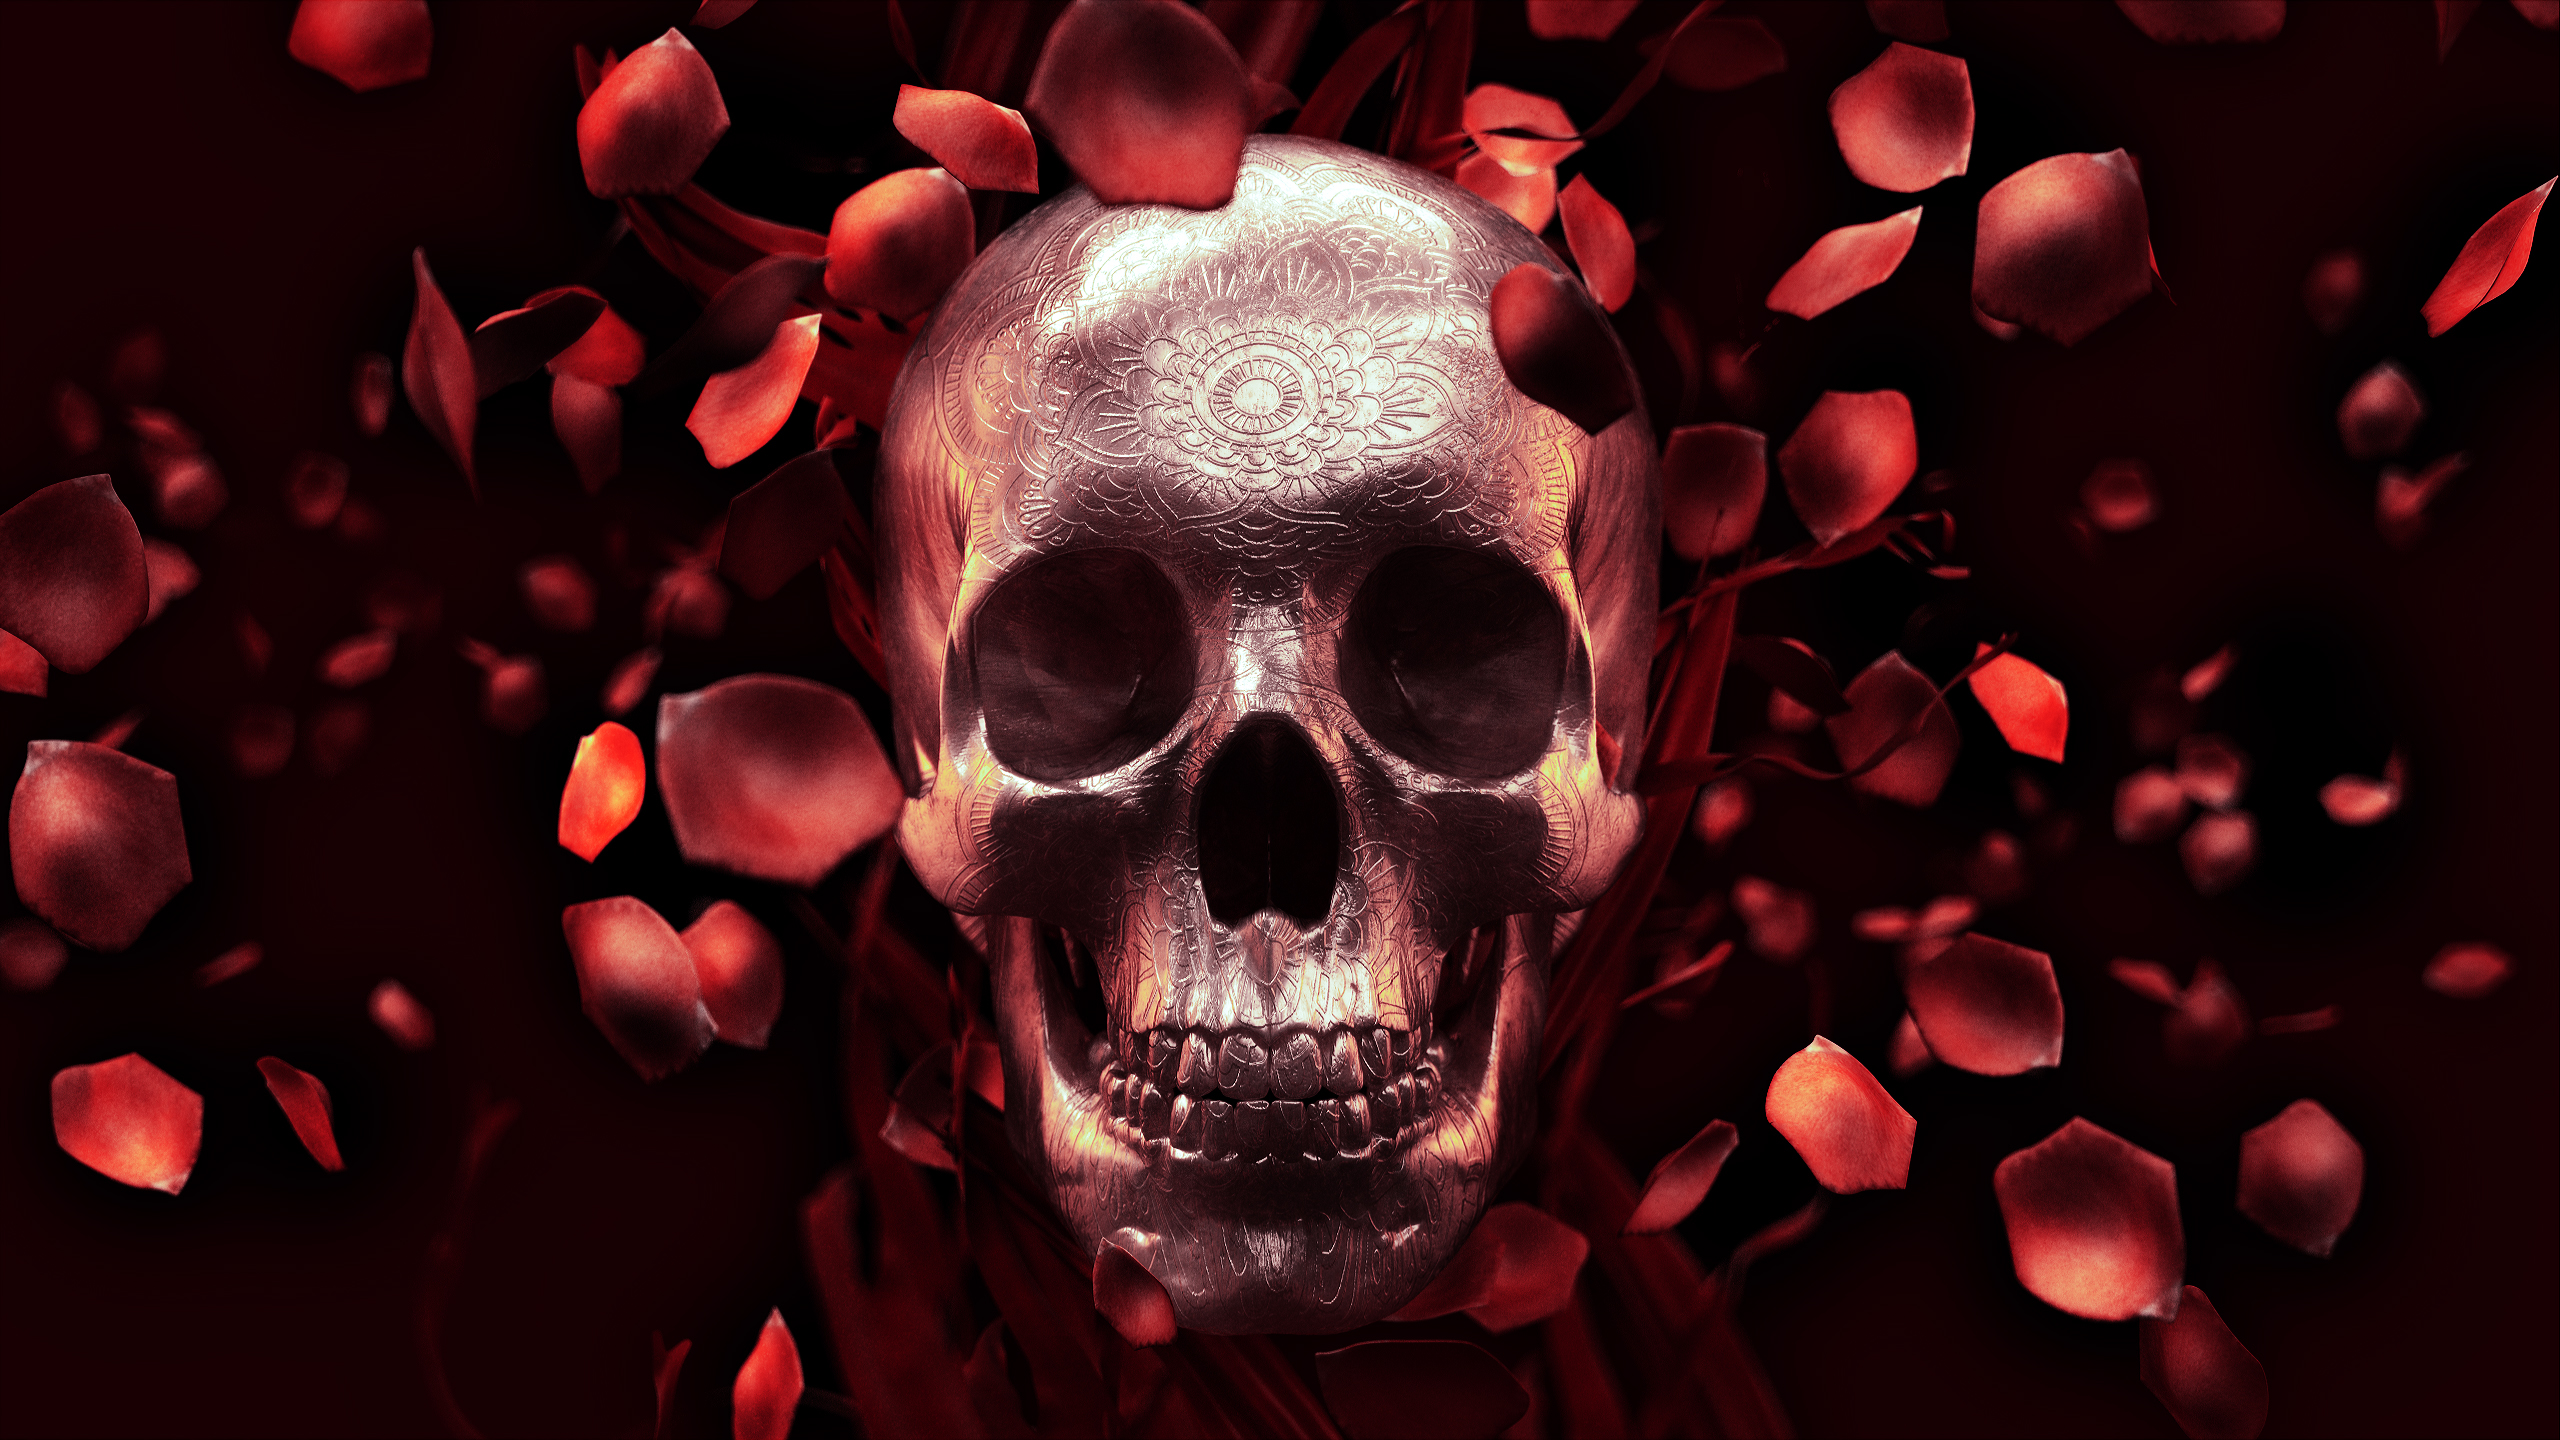 Roses Skull Full , HD Wallpaper & Backgrounds